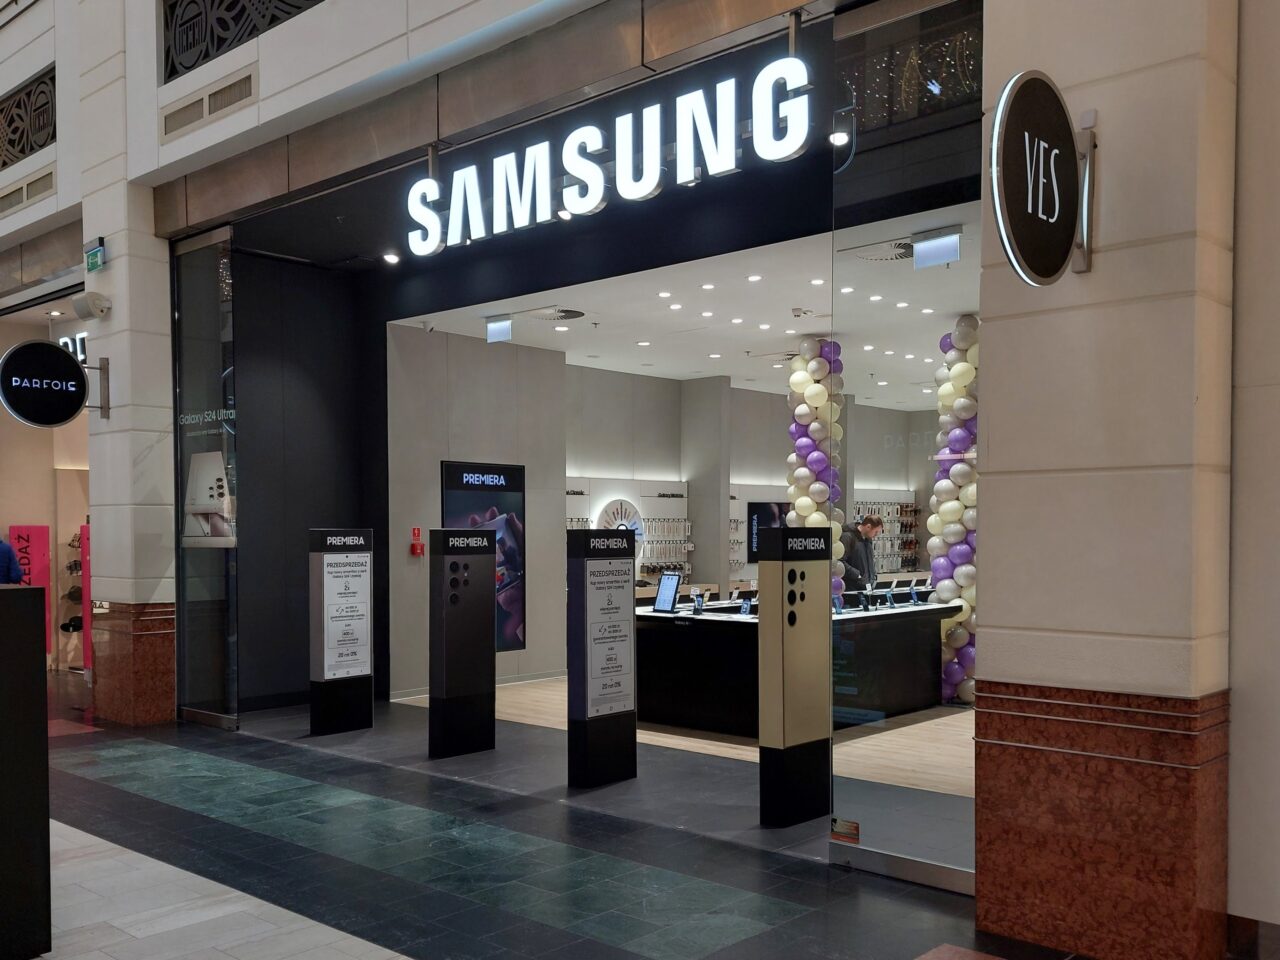 Wejście do salonu Samsung Store w CH Arkadia z reklamami produktów na stojakach przed sklepem i dekoracją z balonów.